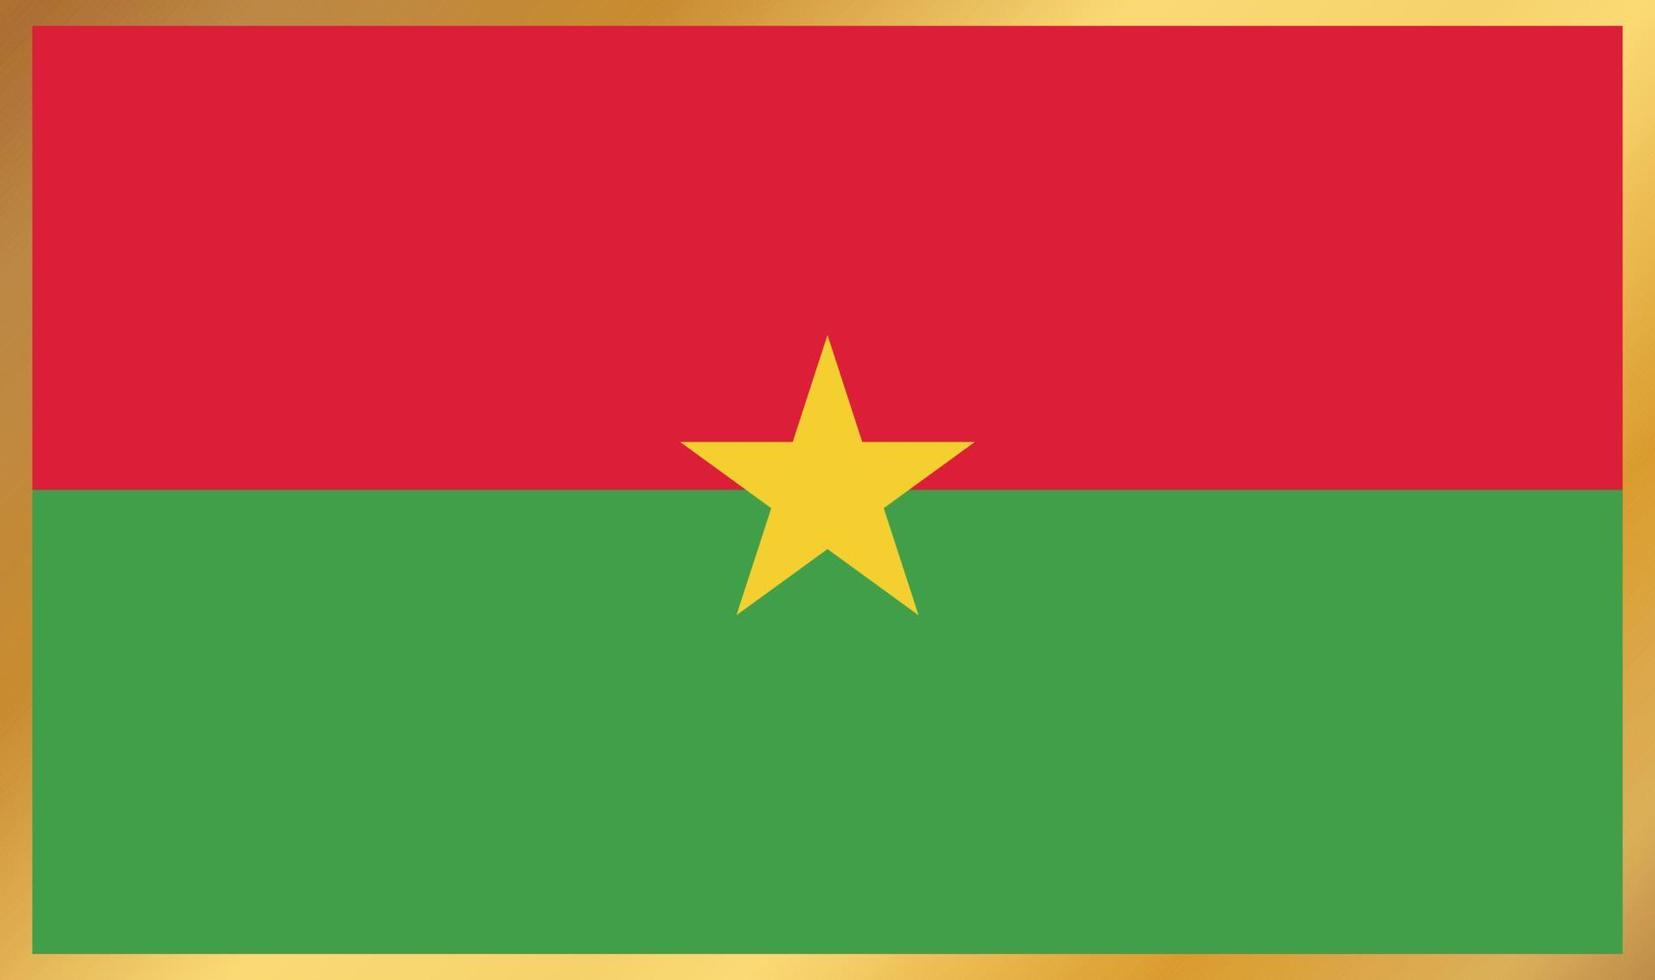 bandiera del burkina faso, illustrazione vettoriale